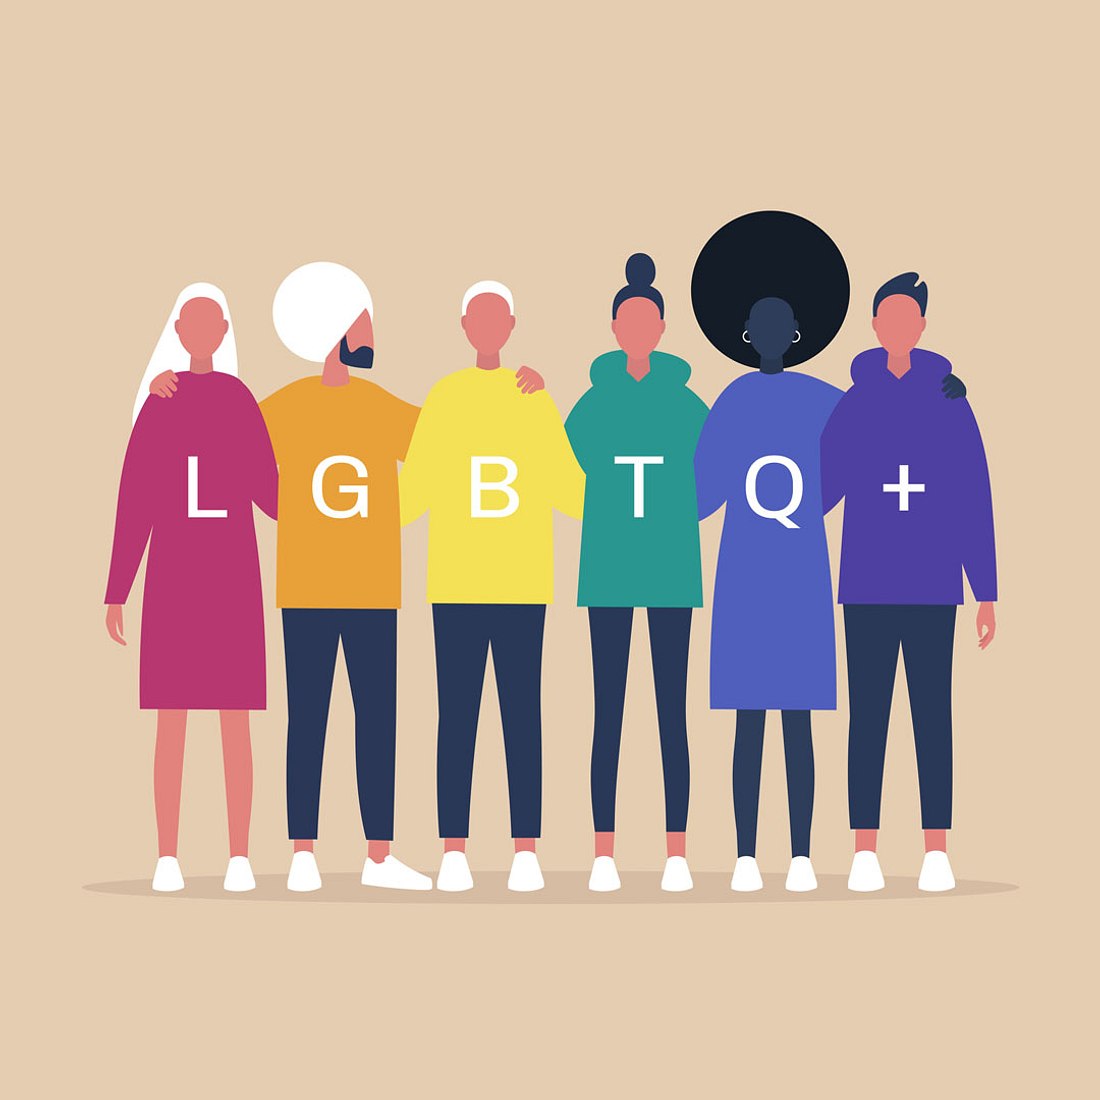 LGBTQ+ Sex Guide: Verhütung, Tipps und Fakten für die queere Community